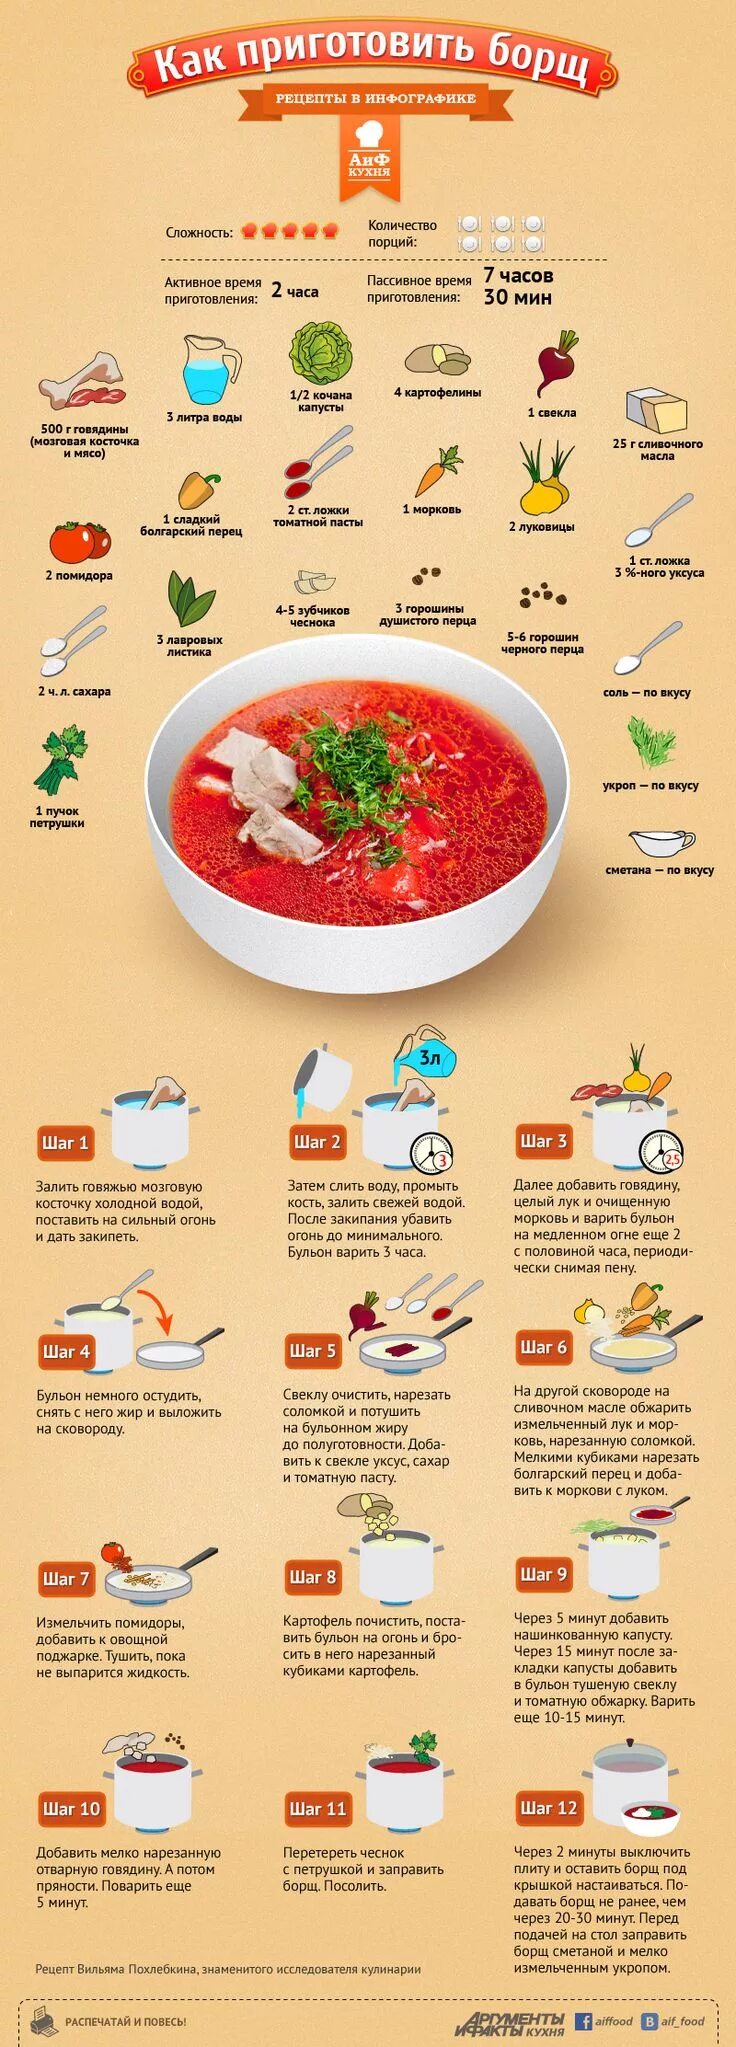 Приготовление супа борщ пошагово. Рецепты в инфографике супы. Инфографика по приготовлению борща. Рецепт борща в картинках.